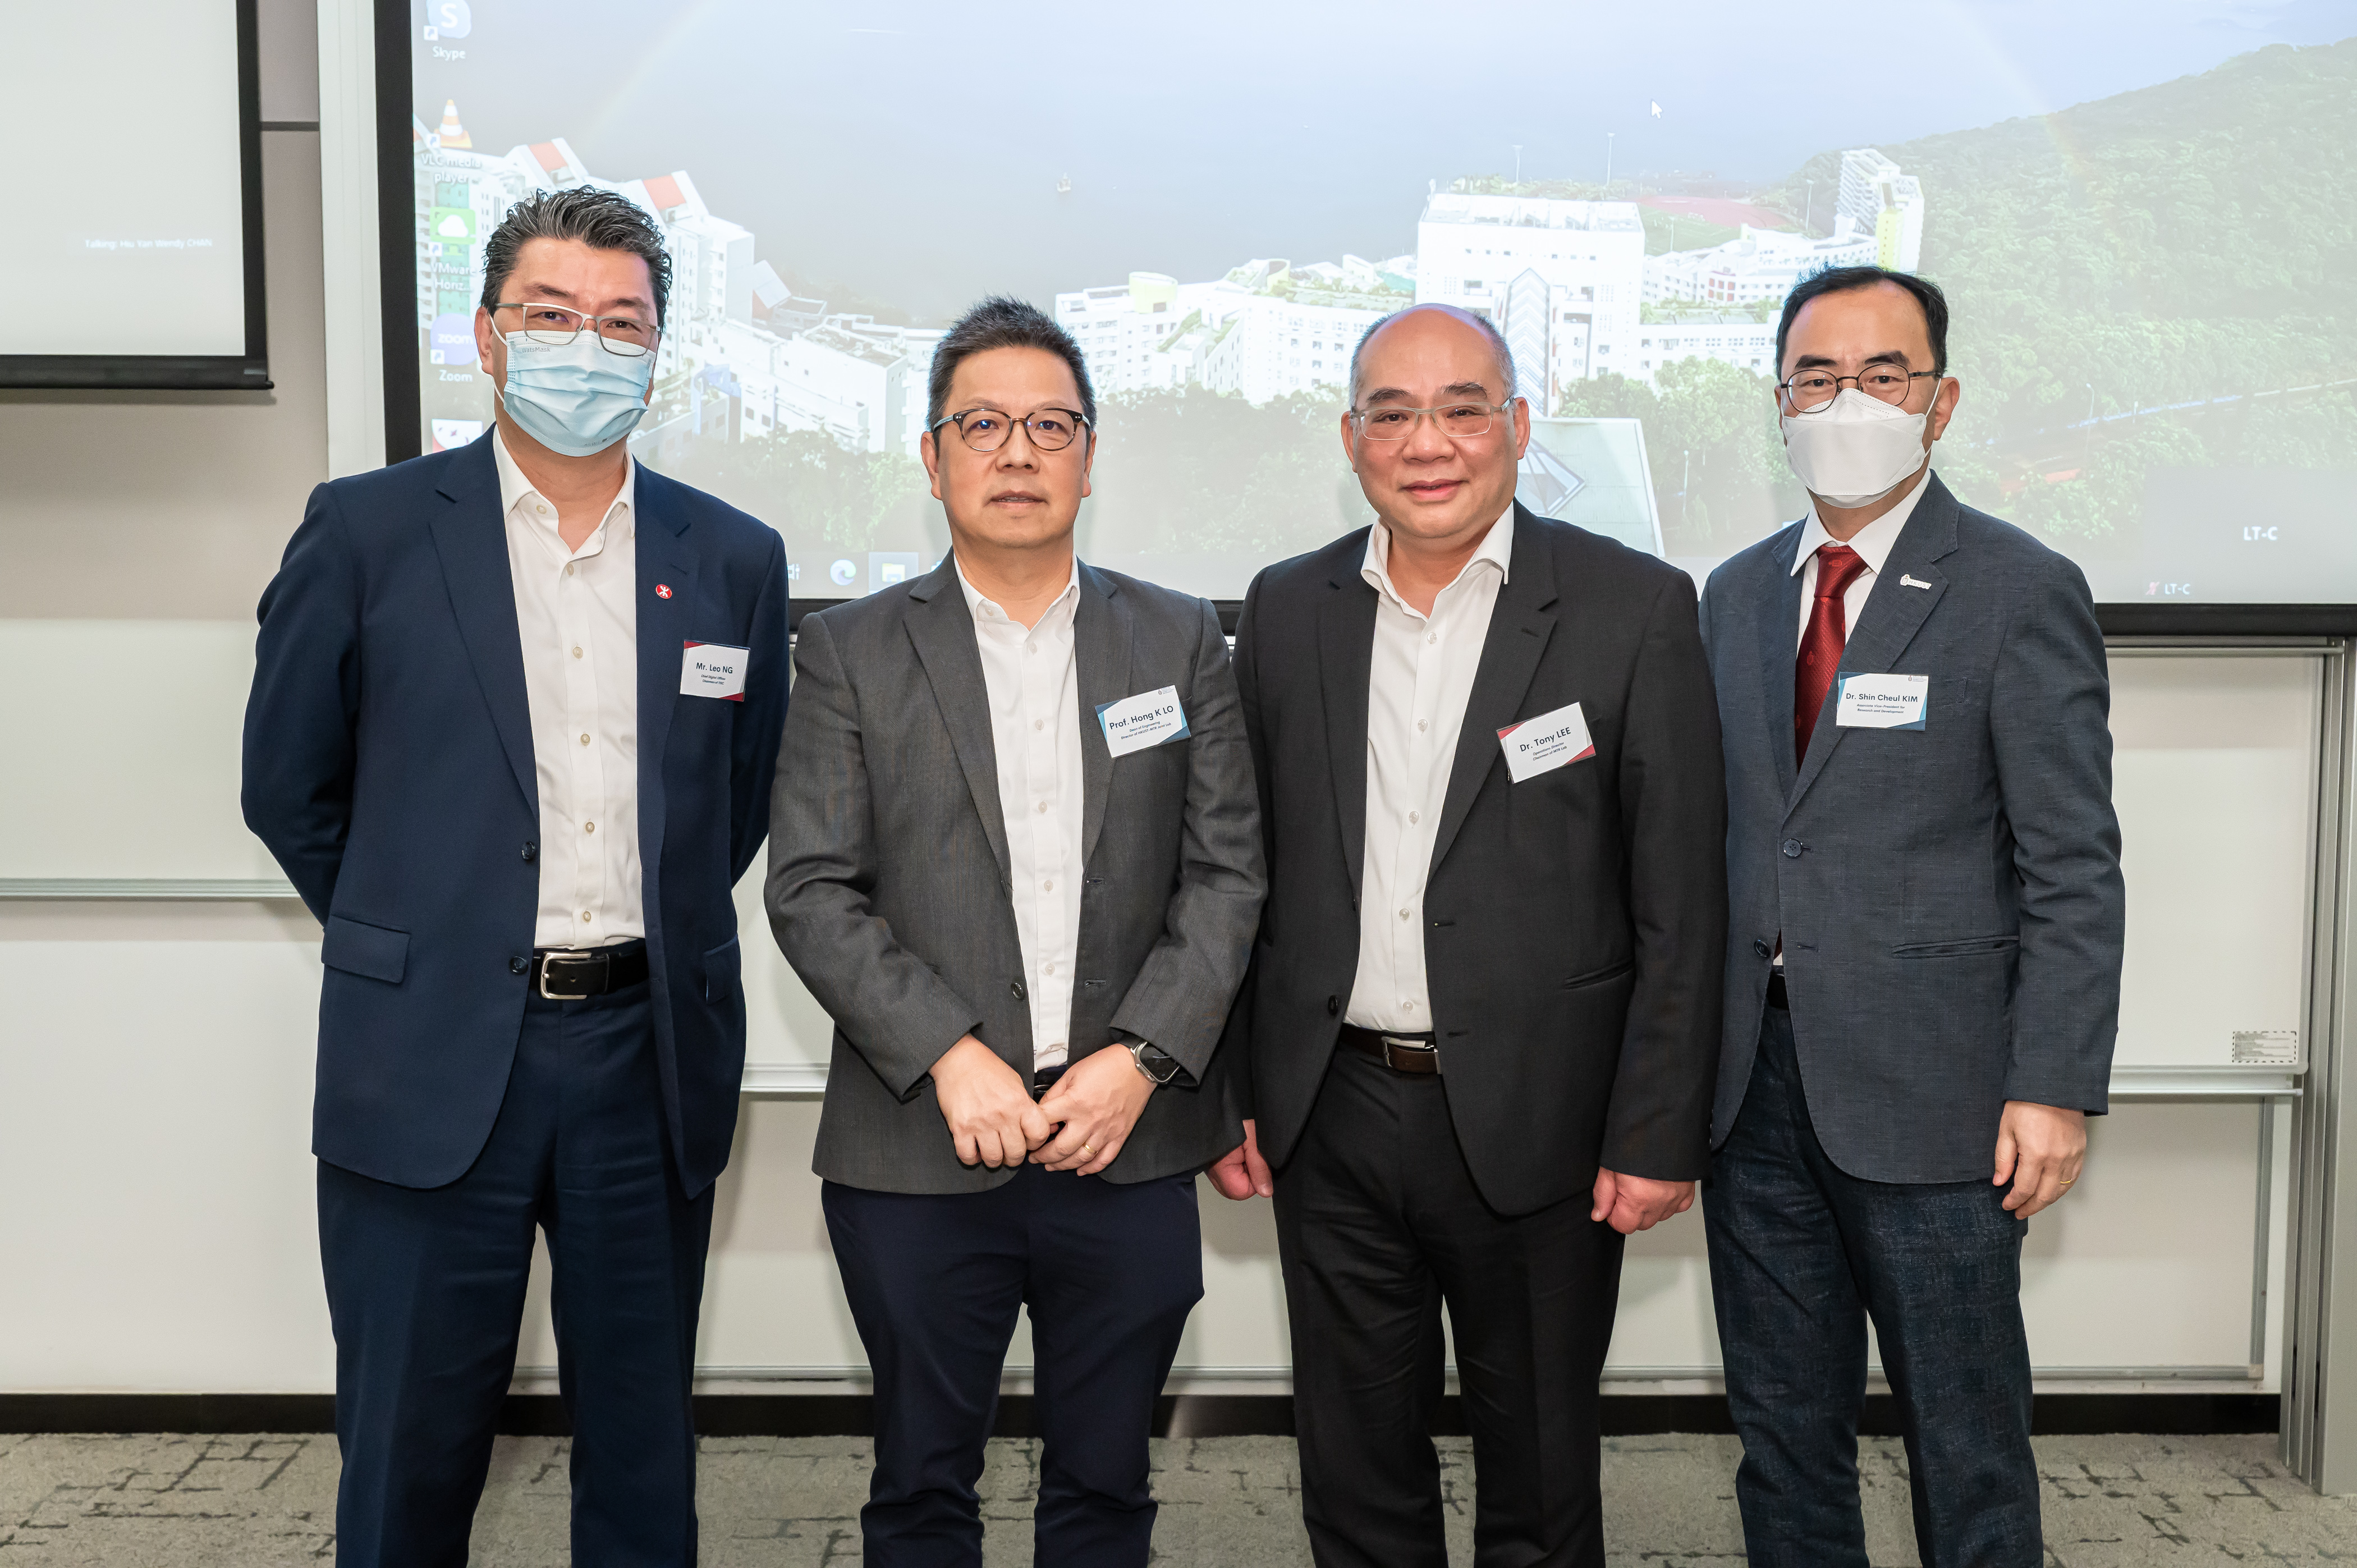 Group photo of Mr. Leo Ng, Prof. Hong K. Lo, Dr. Tony Lee, Dr. SC Kim